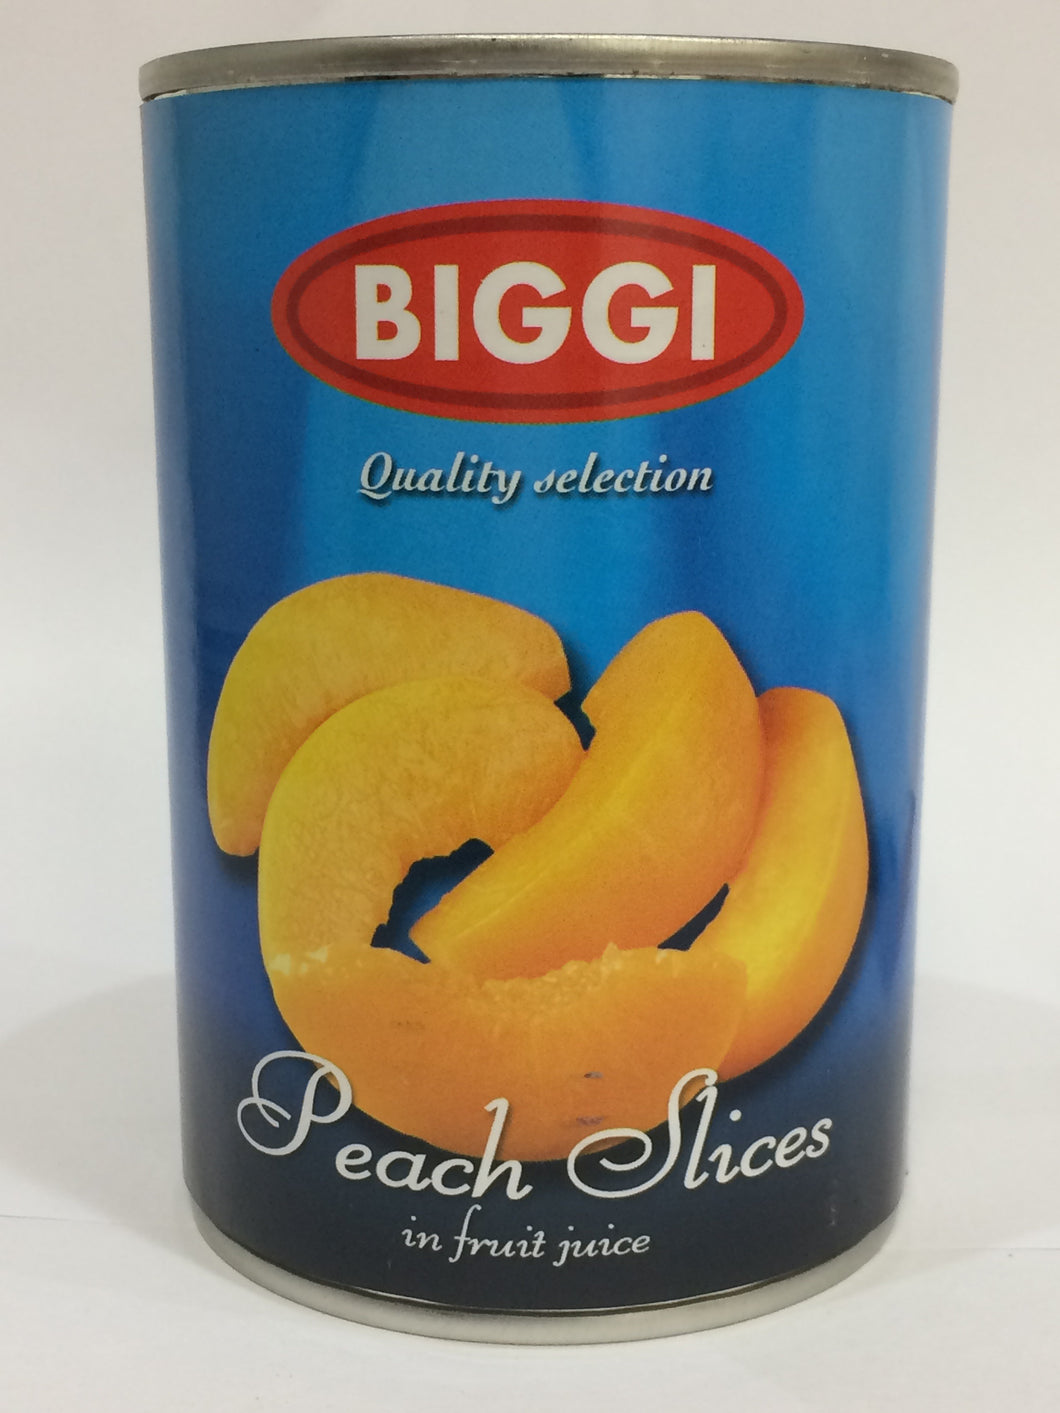 Biggi Peach Slices in Fruit Juice 400g